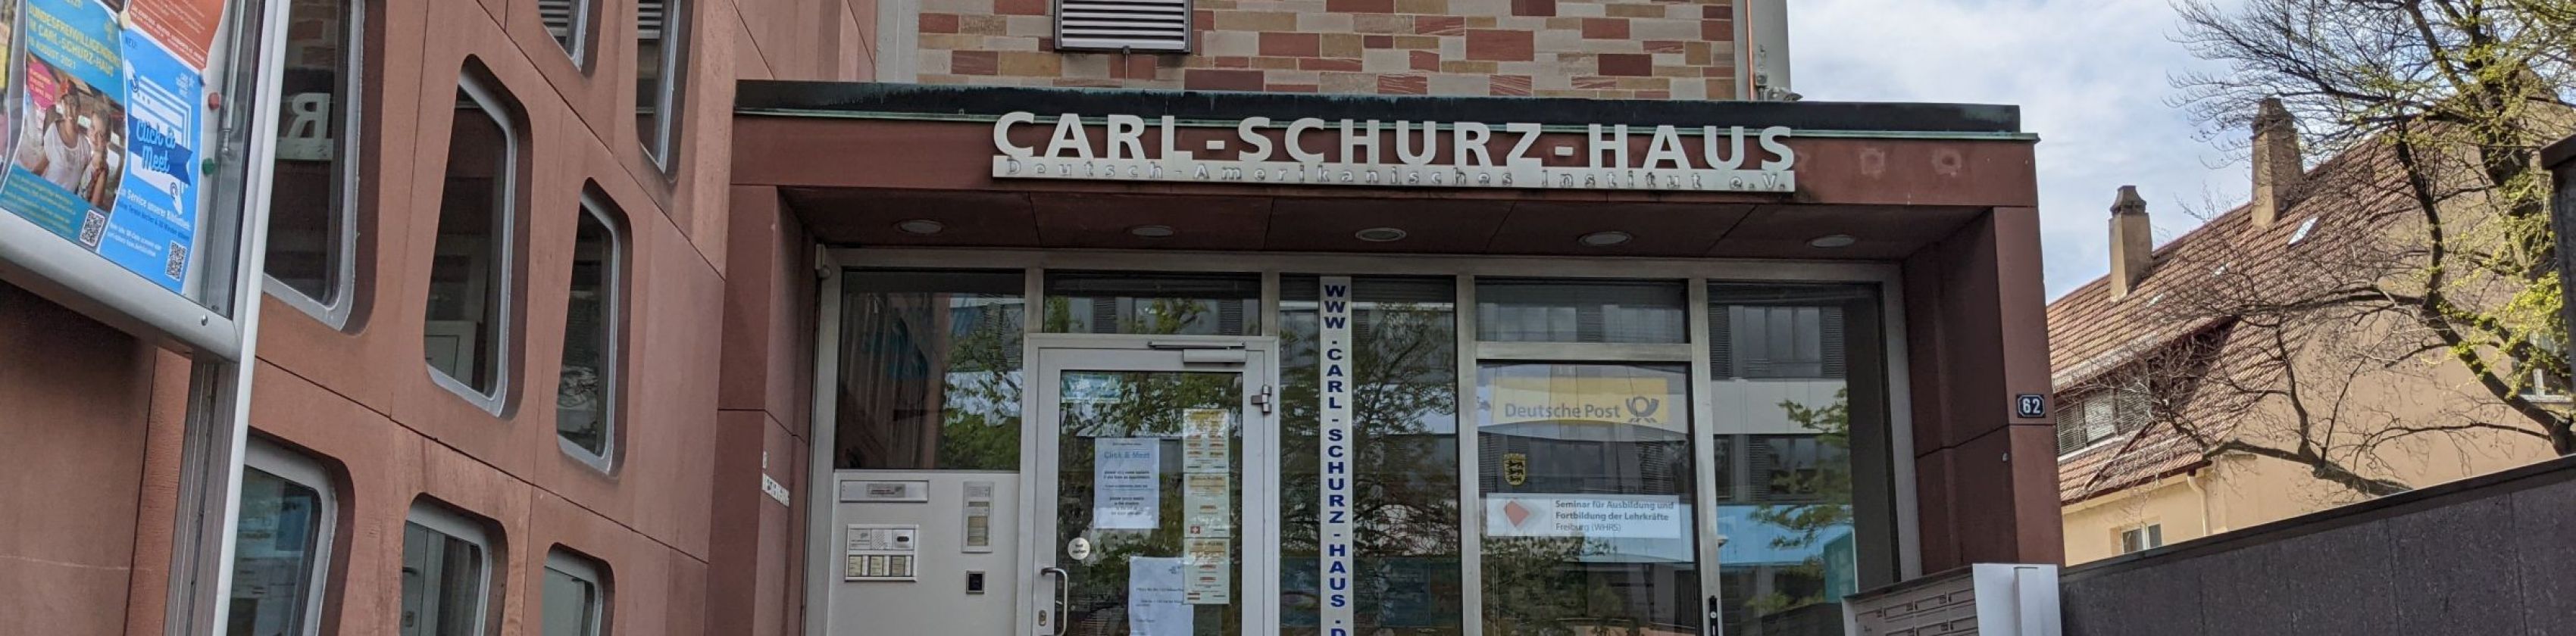 Carl Schurz Haus